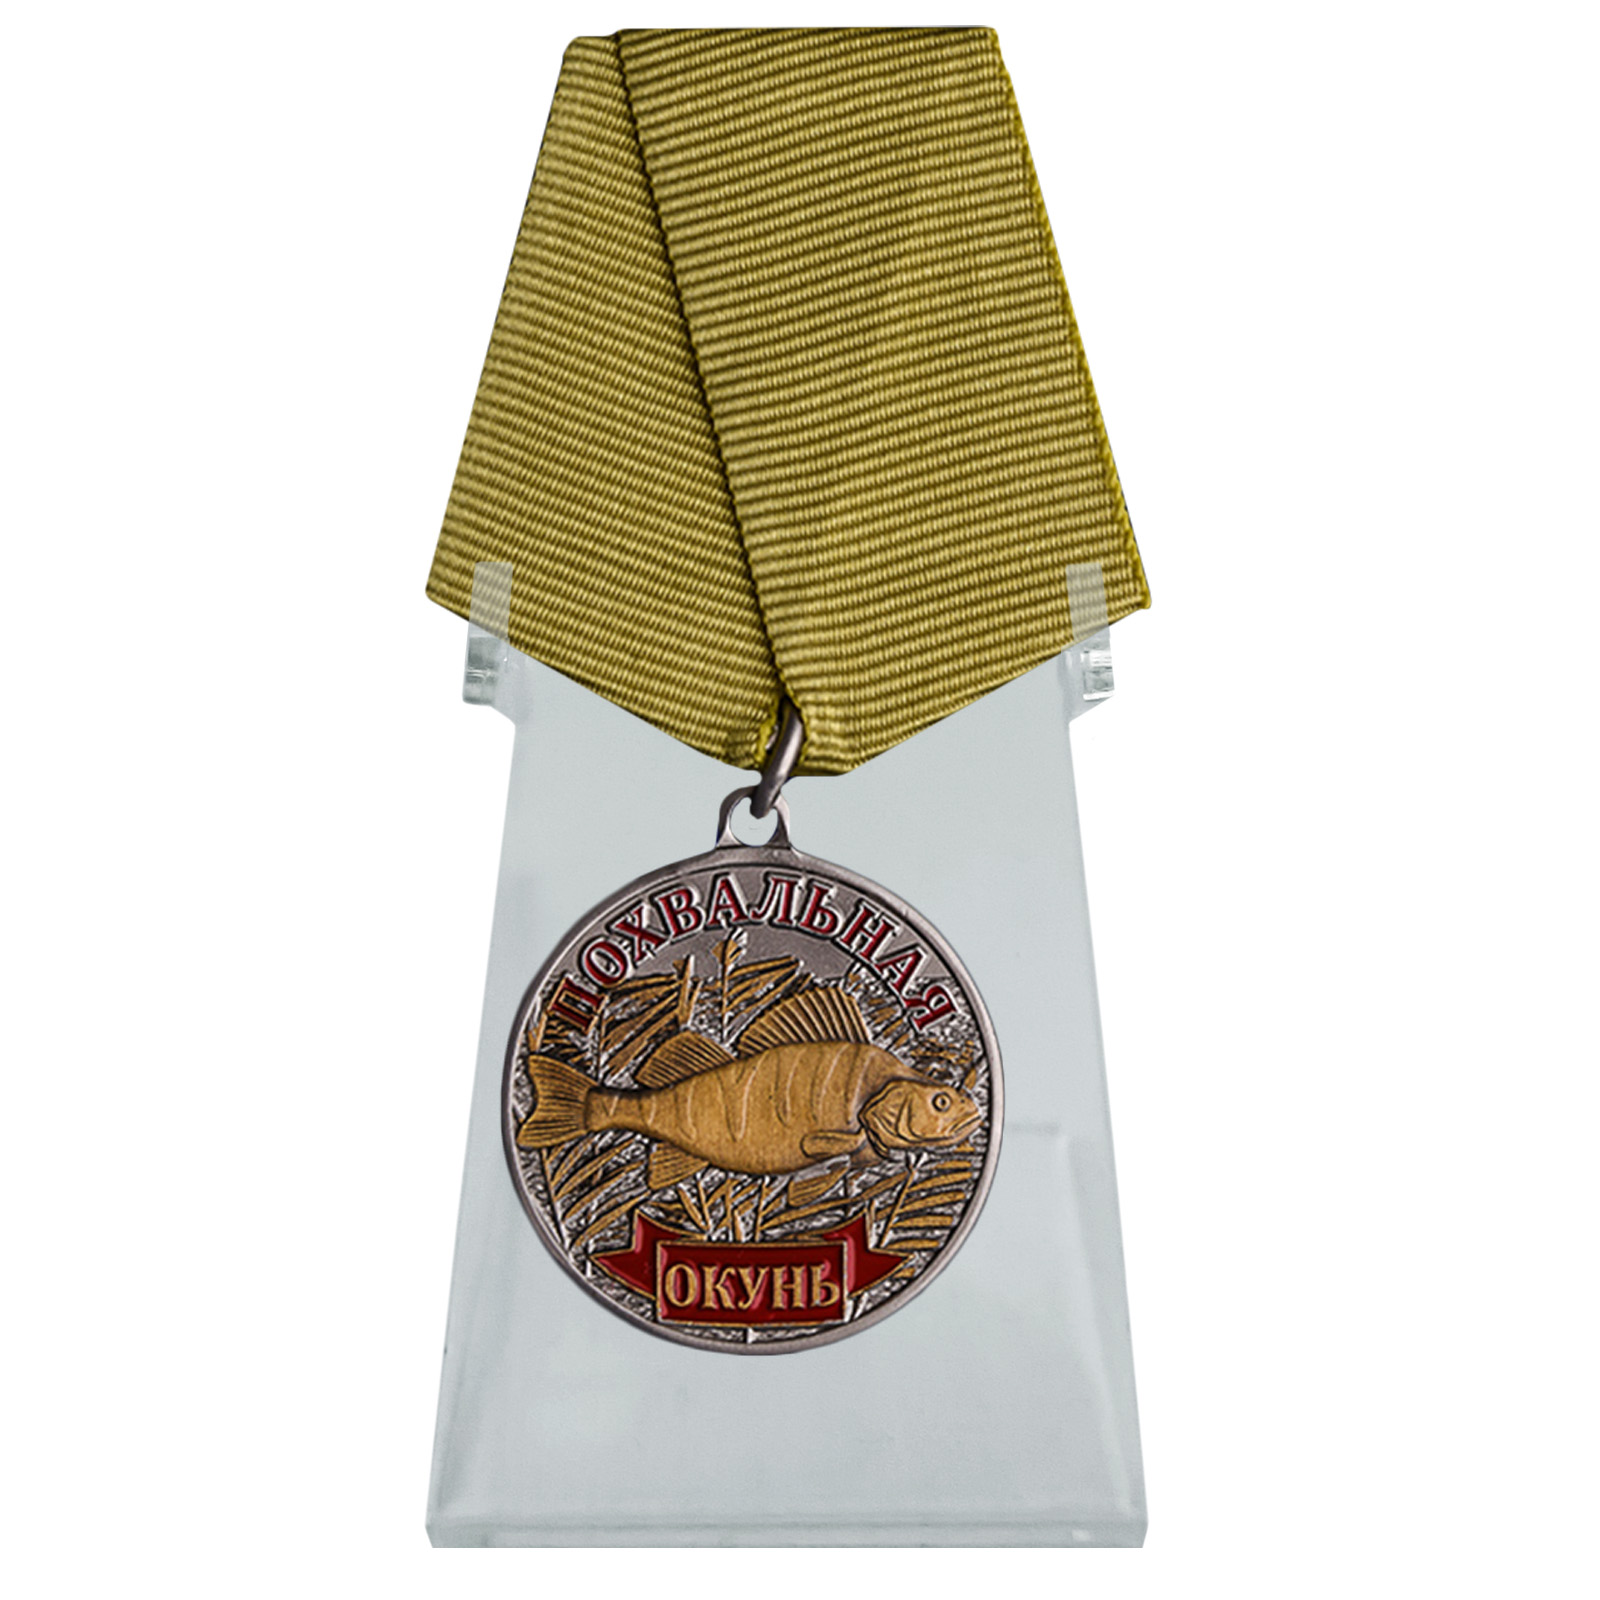 Купить медаль сувенир Окунь на подставке в подарок онлайн